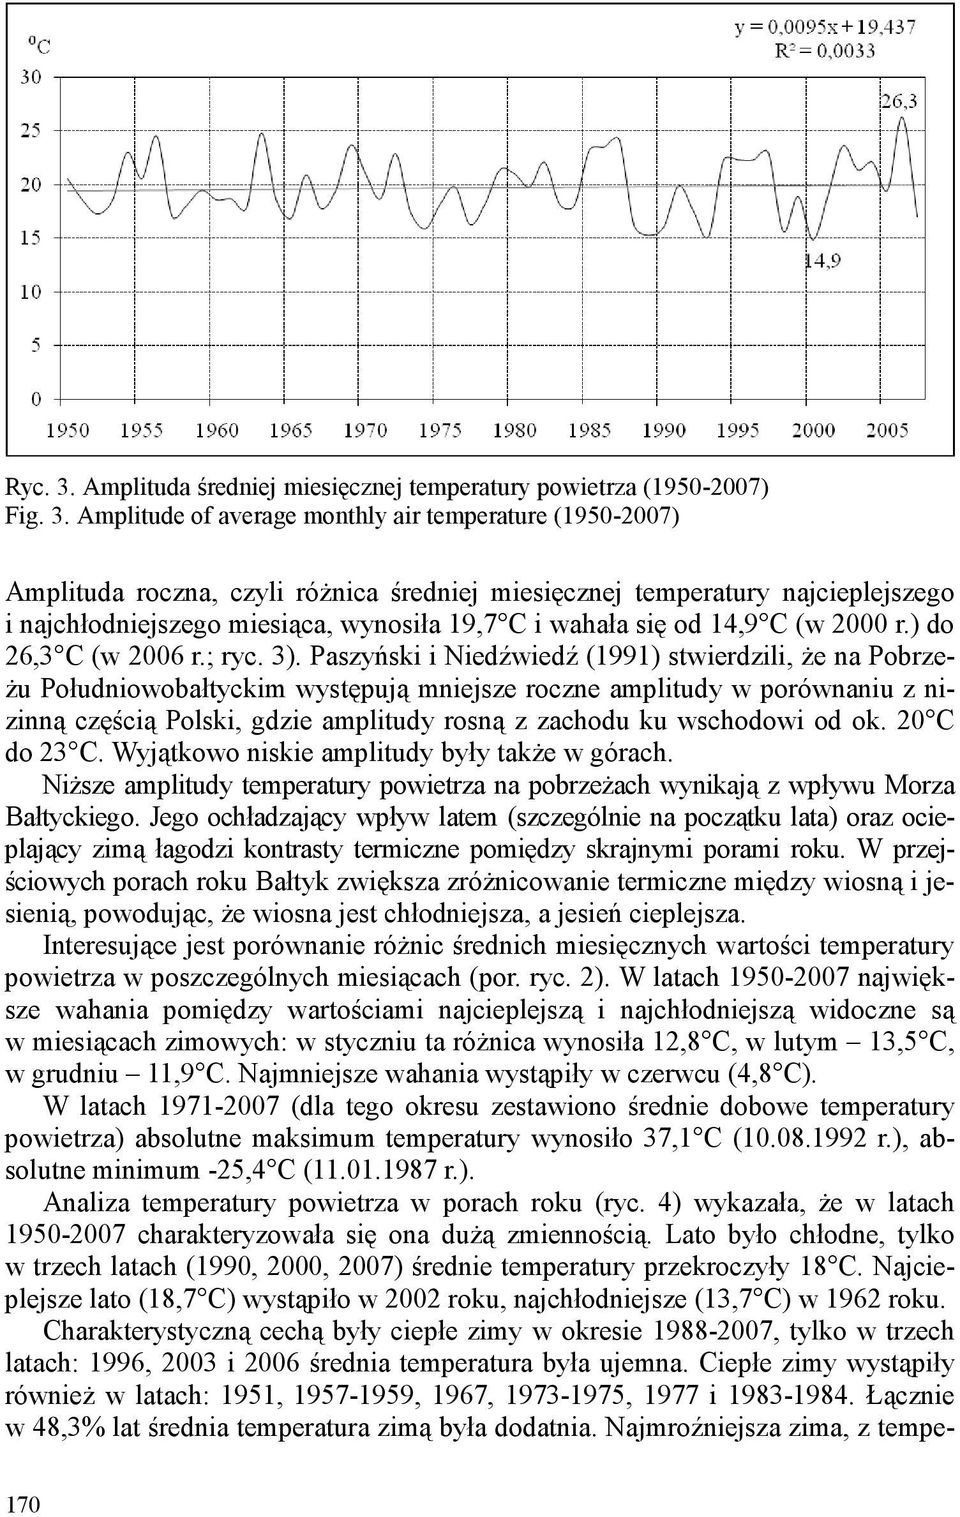 Amplitude of average monthly air temperature (1950-2007) Amplituda roczna, czyli róŝnica średniej miesięcznej temperatury najcieplejszego i najchłodniejszego miesiąca, wynosiła 19,7 C i wahała się od